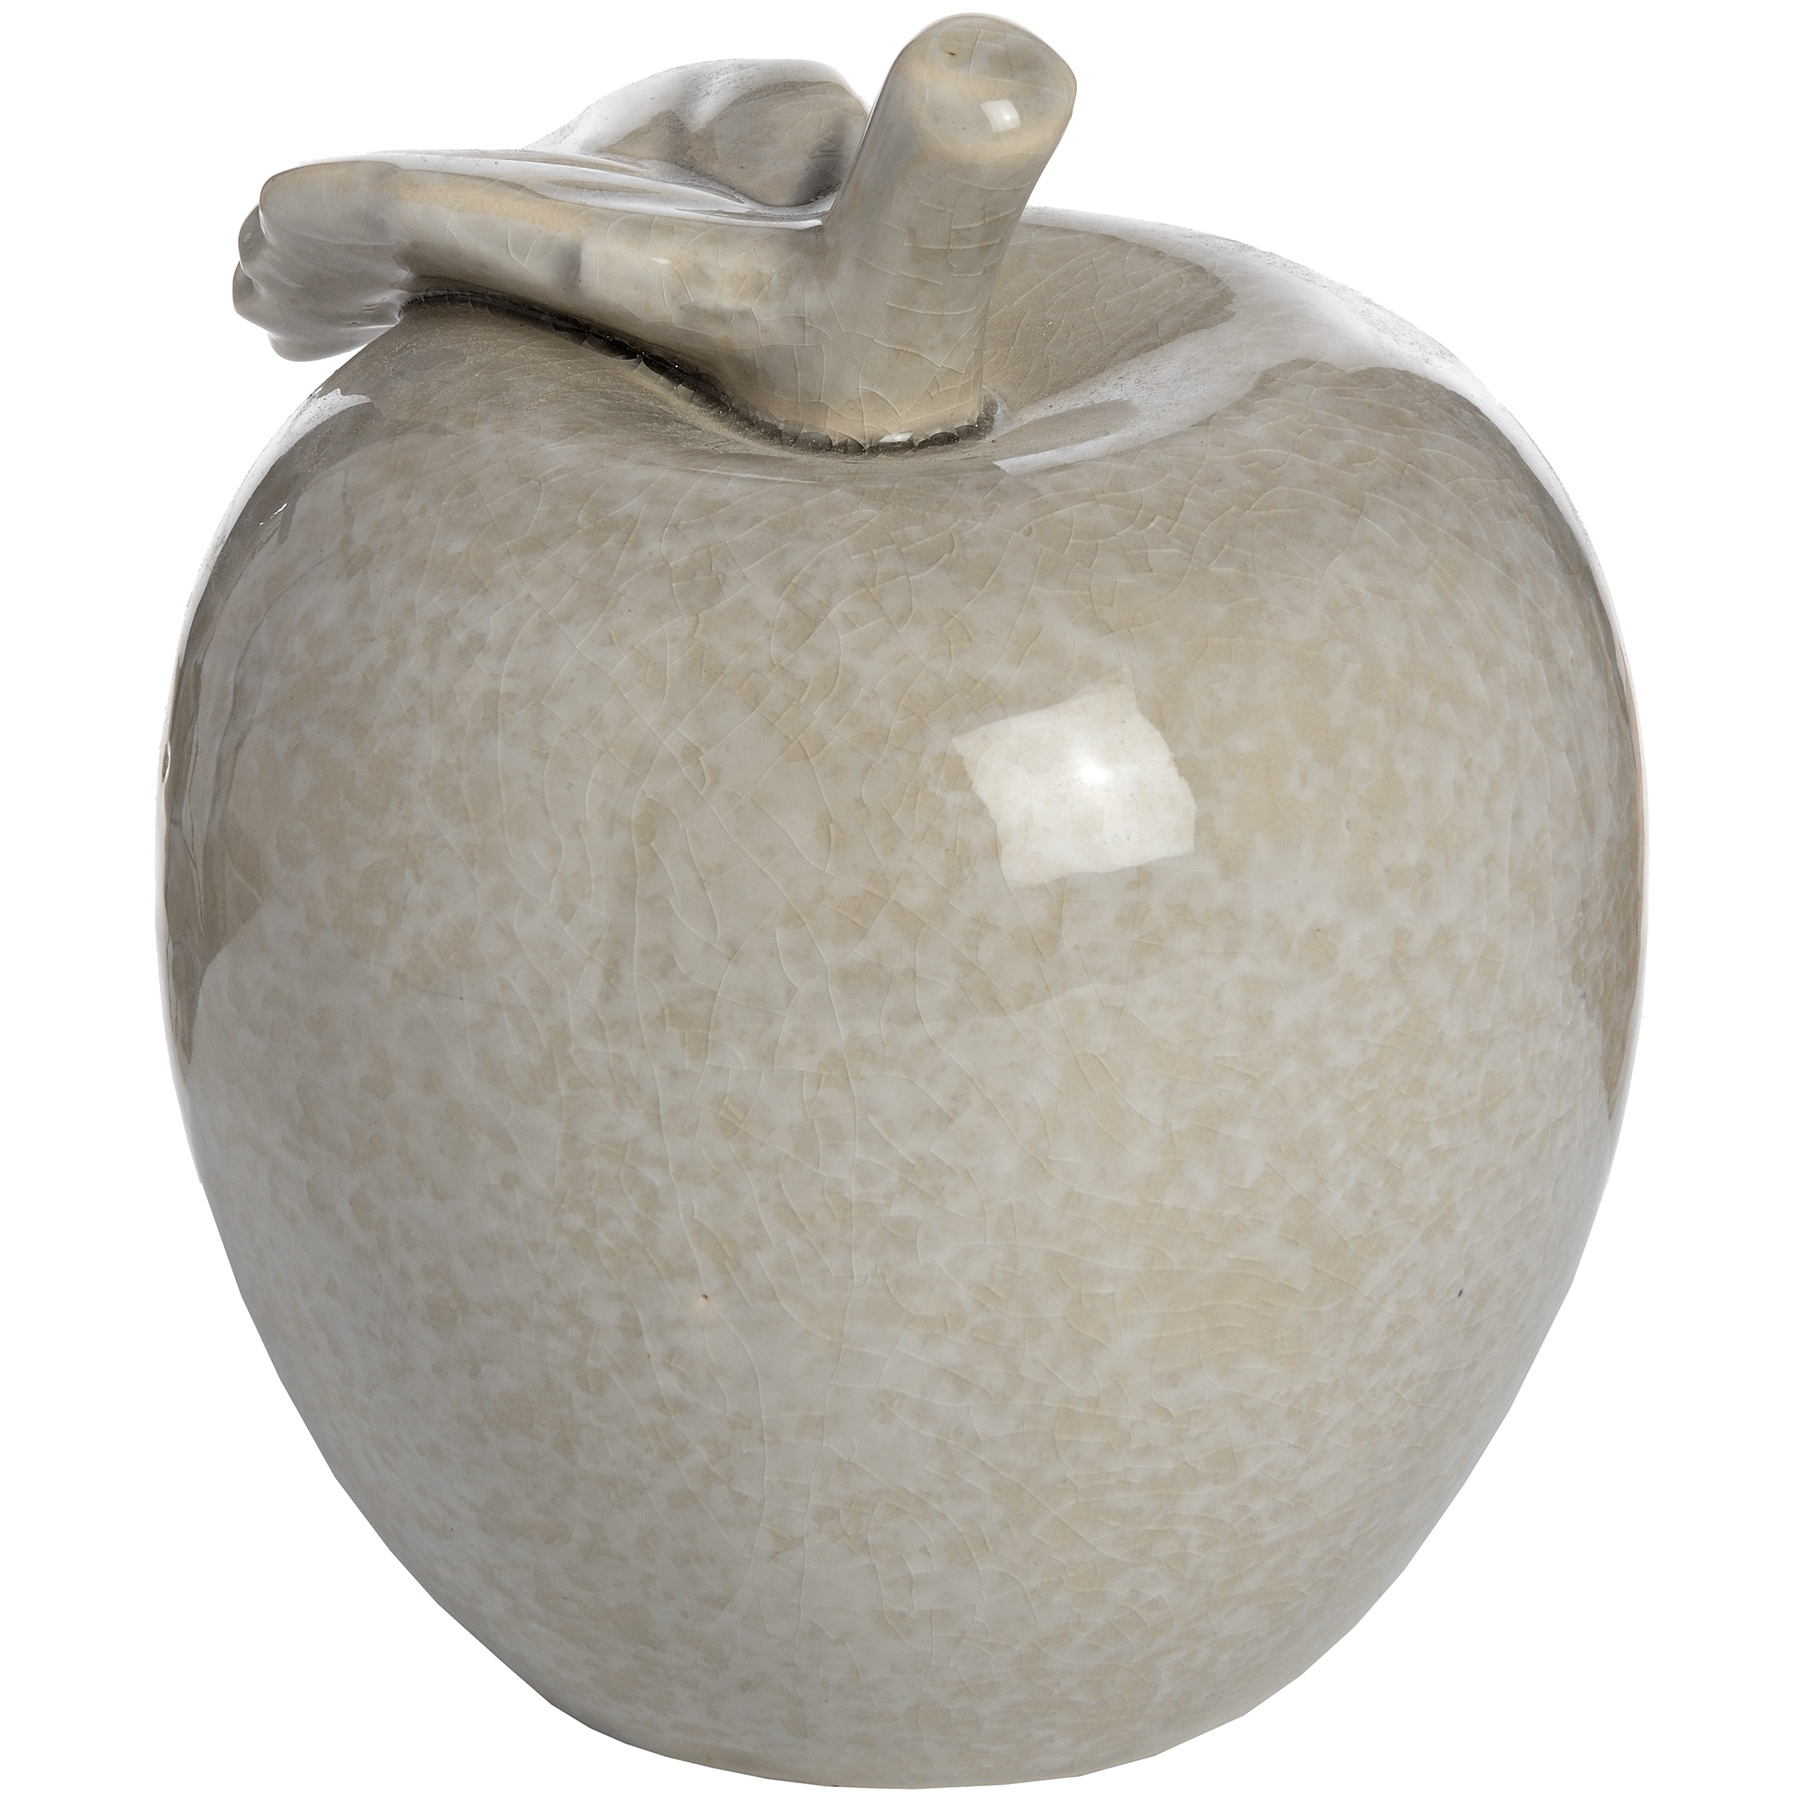 Antique Grey Small Ceramic Apple - Image 2